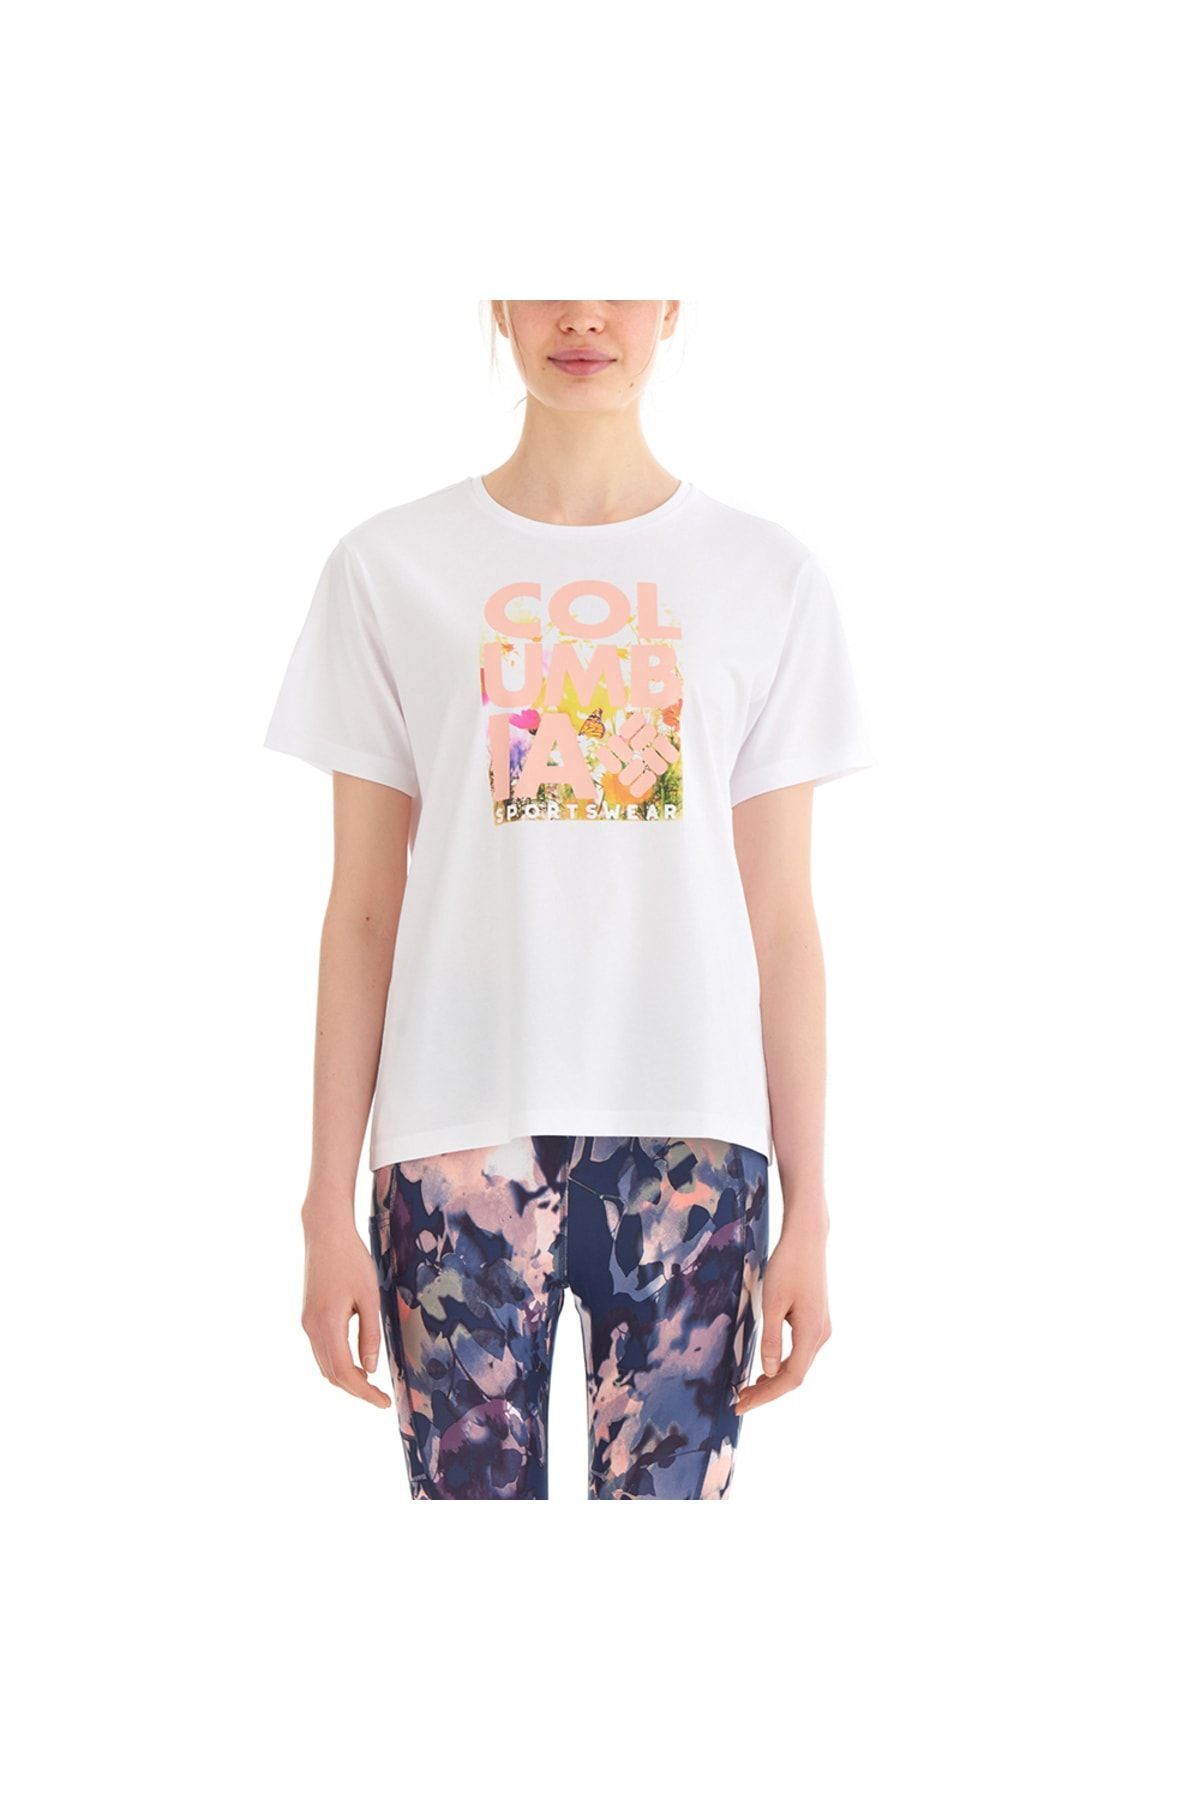 Columbia Csc Floral Blur Kadın Kısa Kollu T-shirt